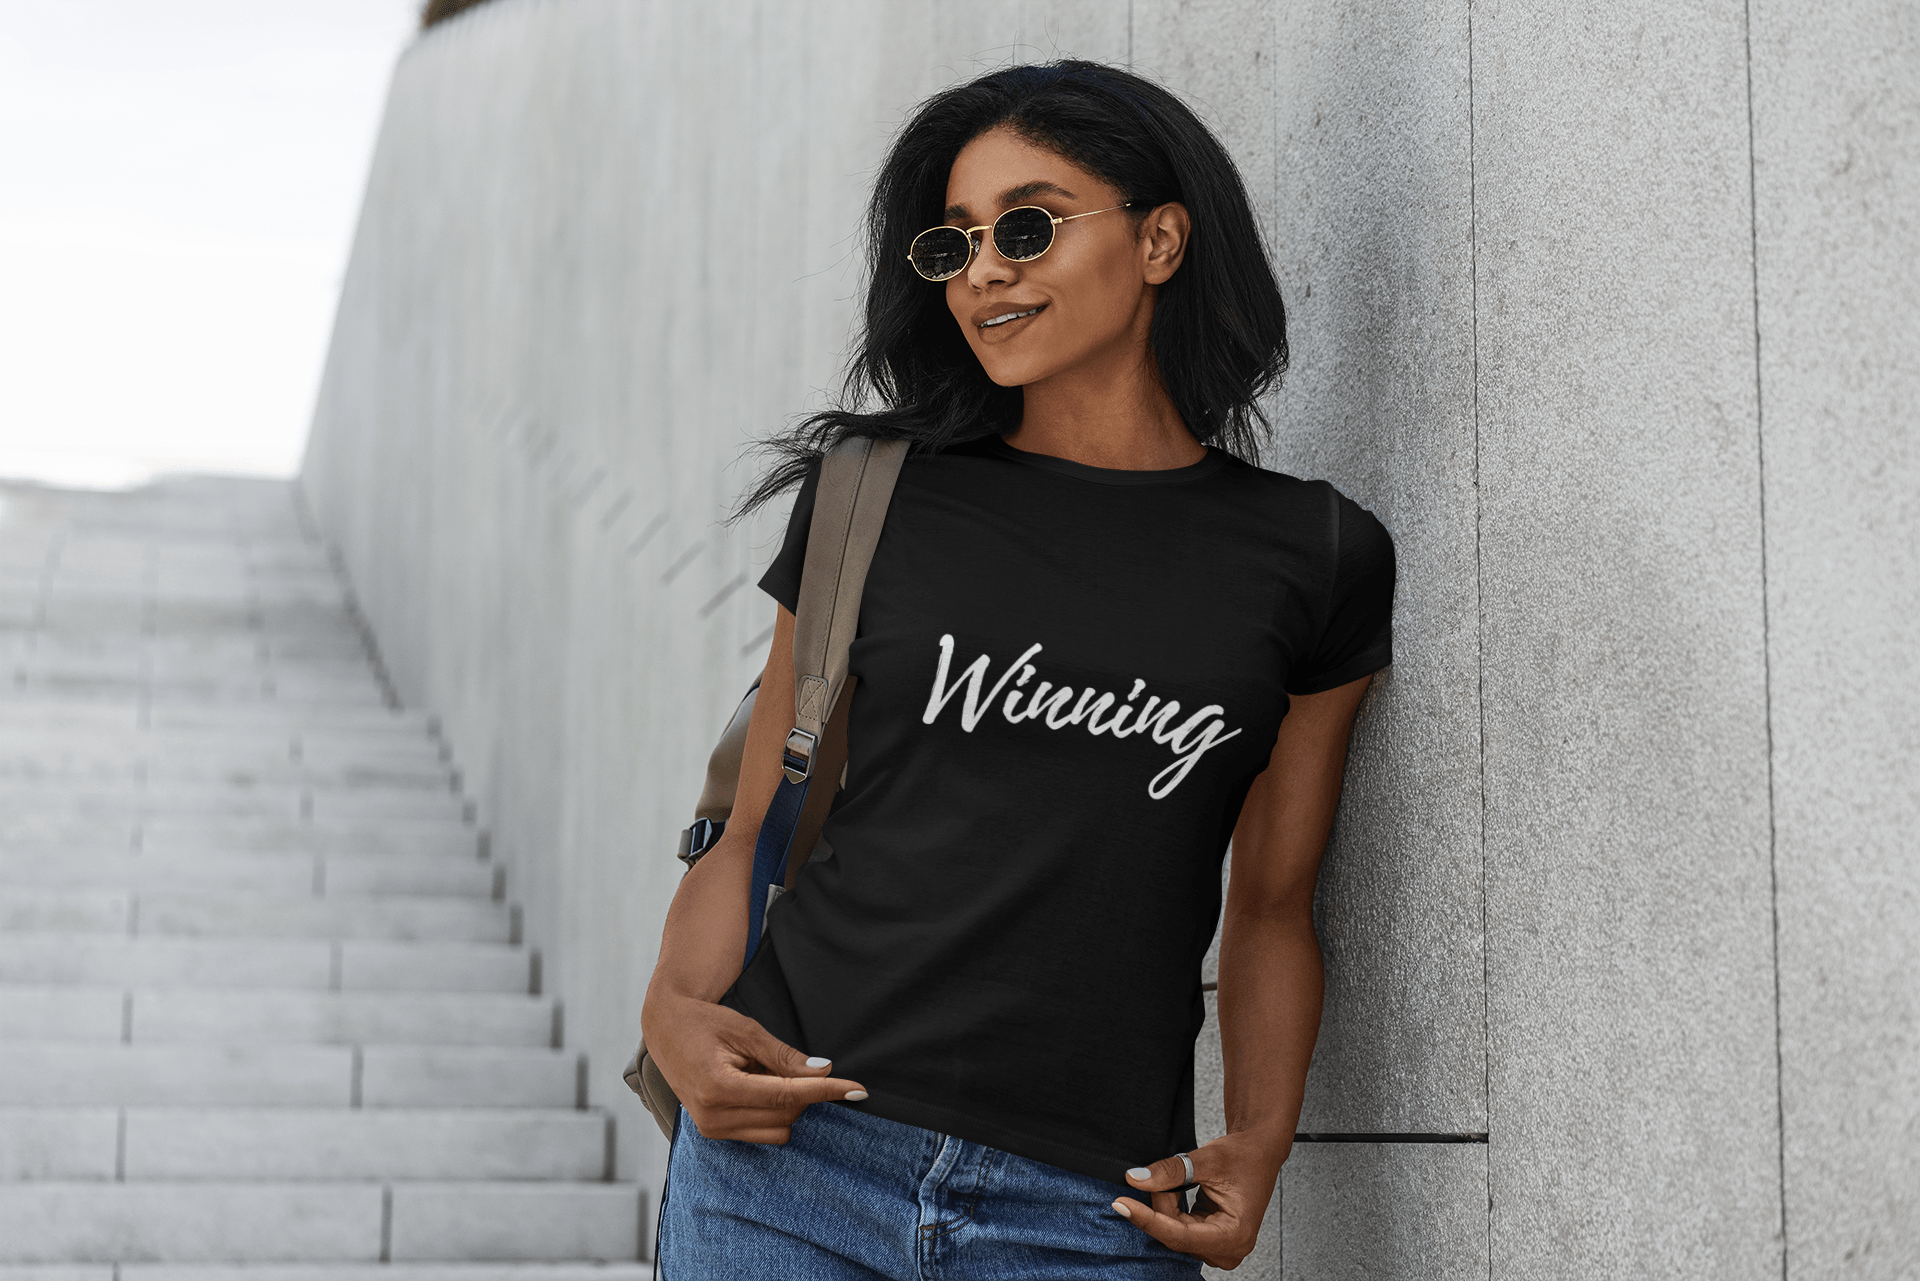 Winning T-Shirt - Women Empowerment T-Shirts & Apparel | CP Designs Unlimited